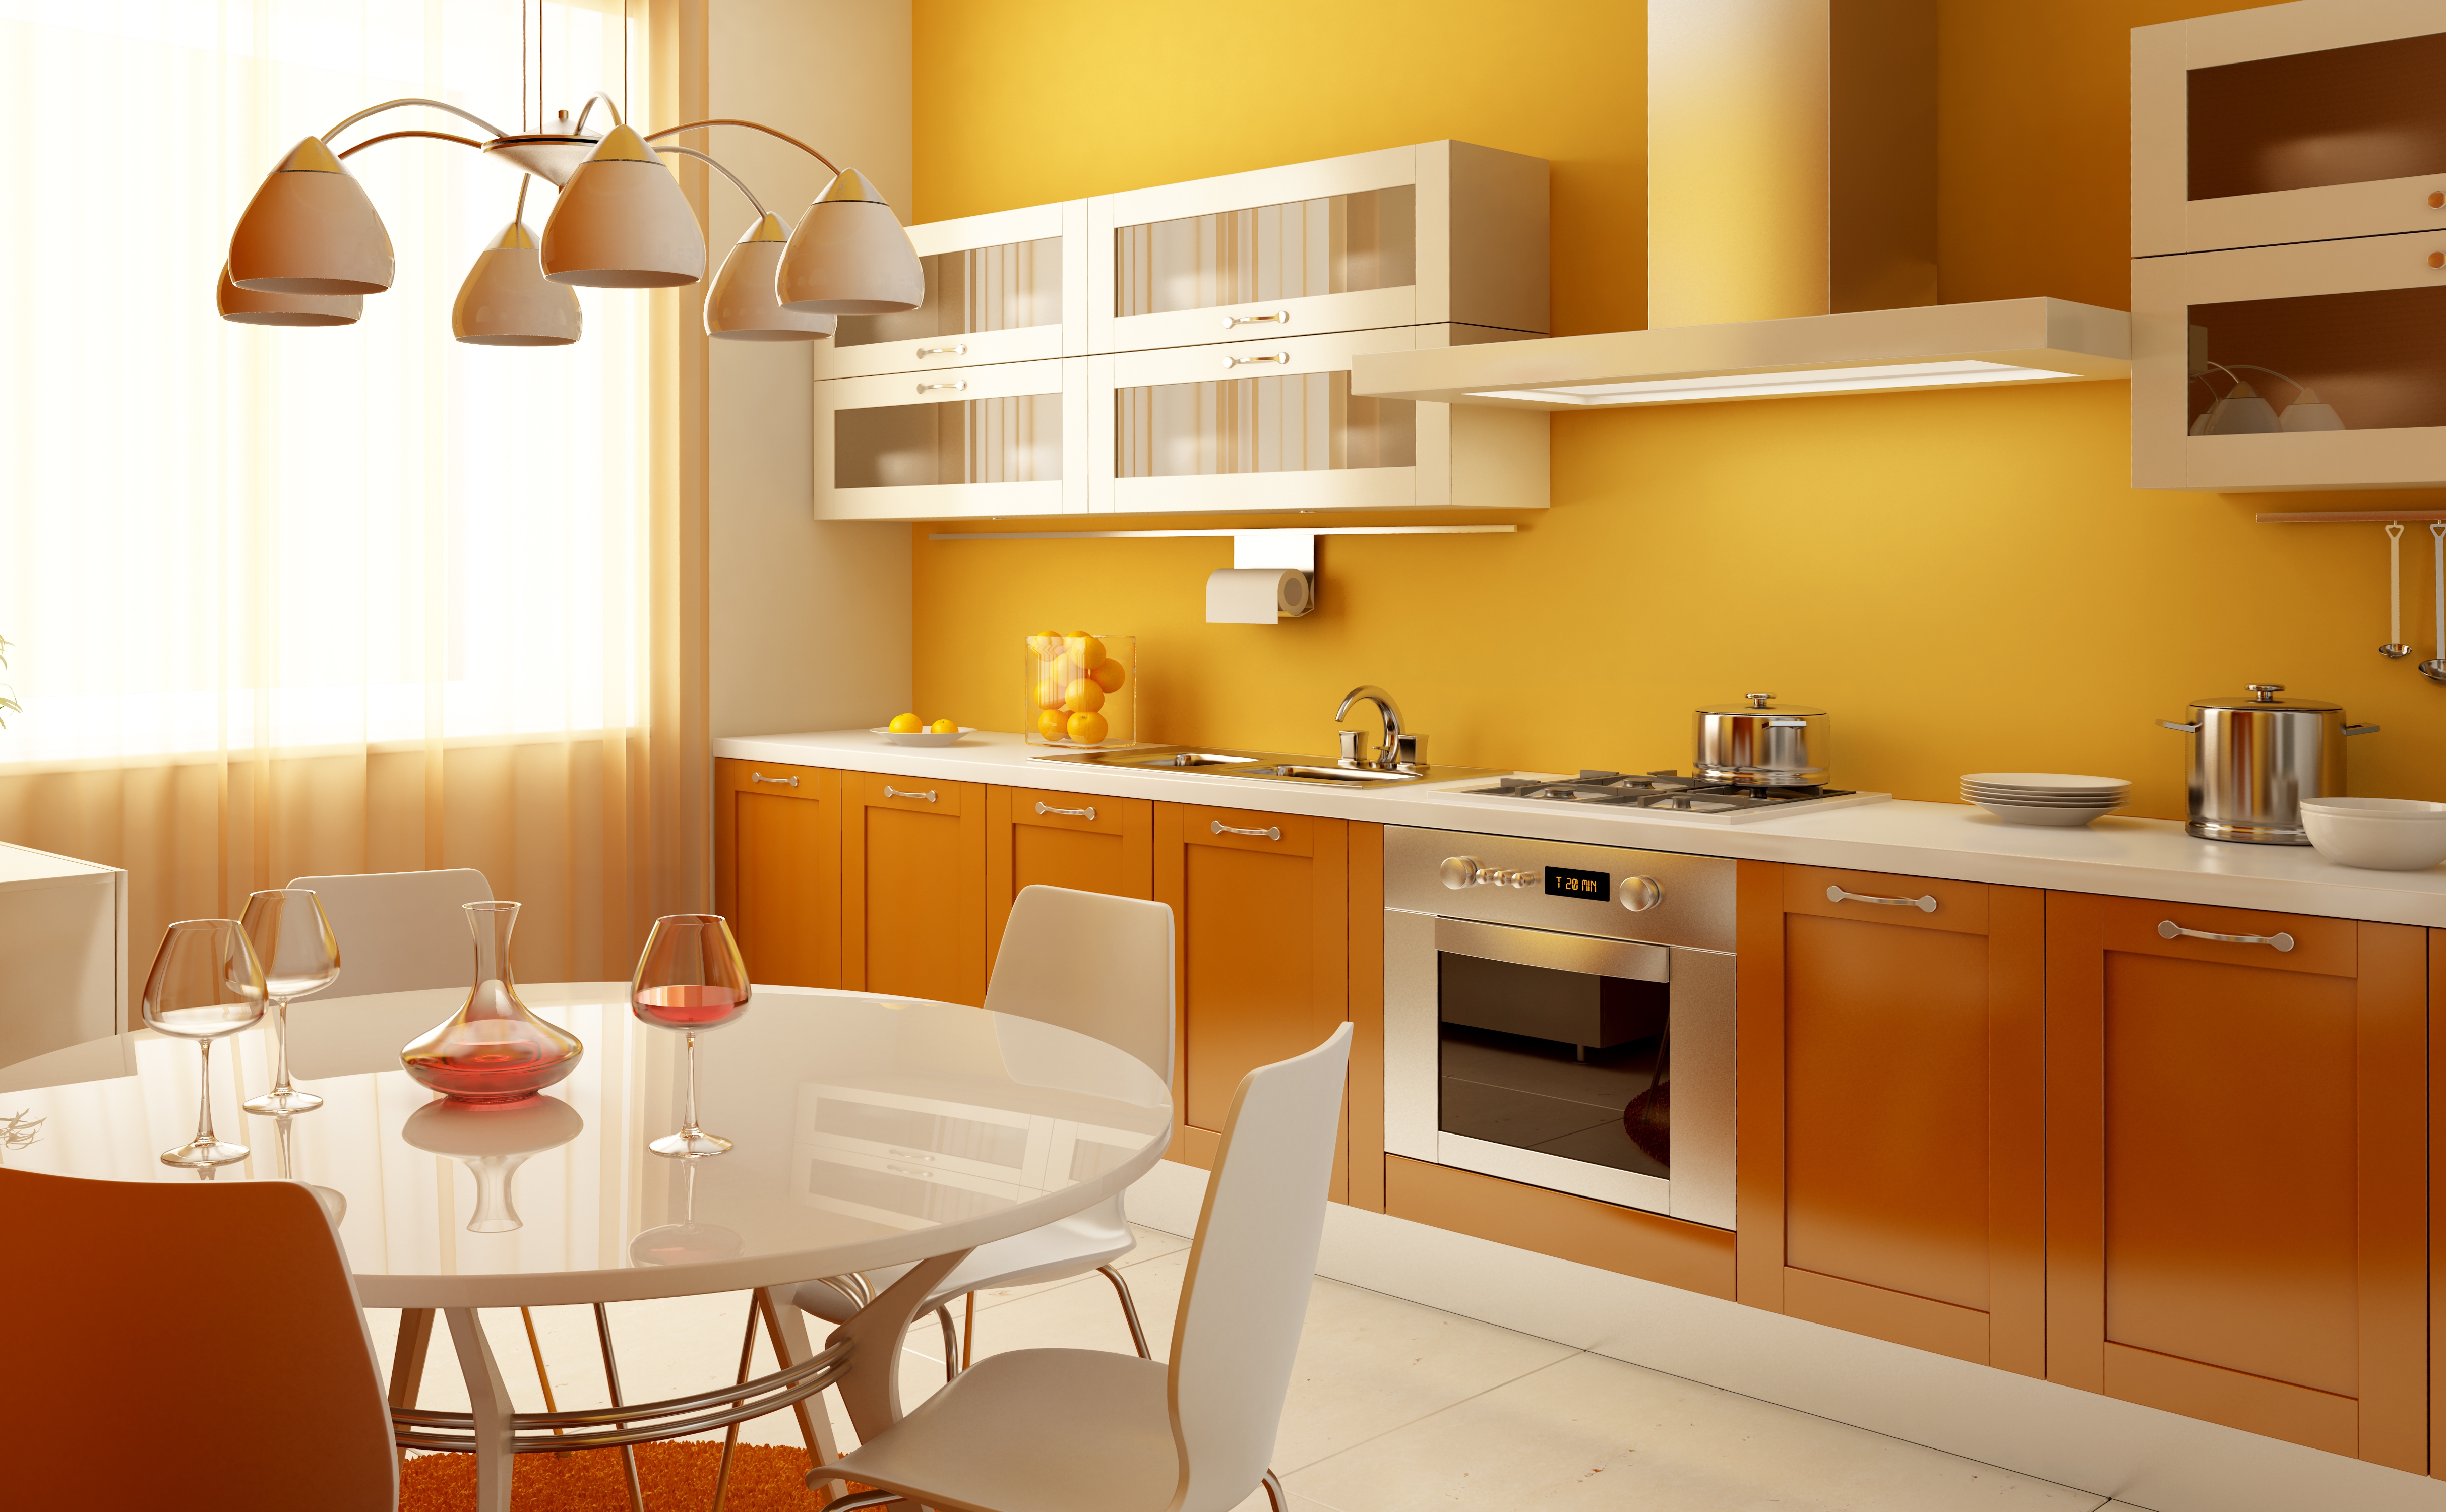 orange wallpaper in the kitchen